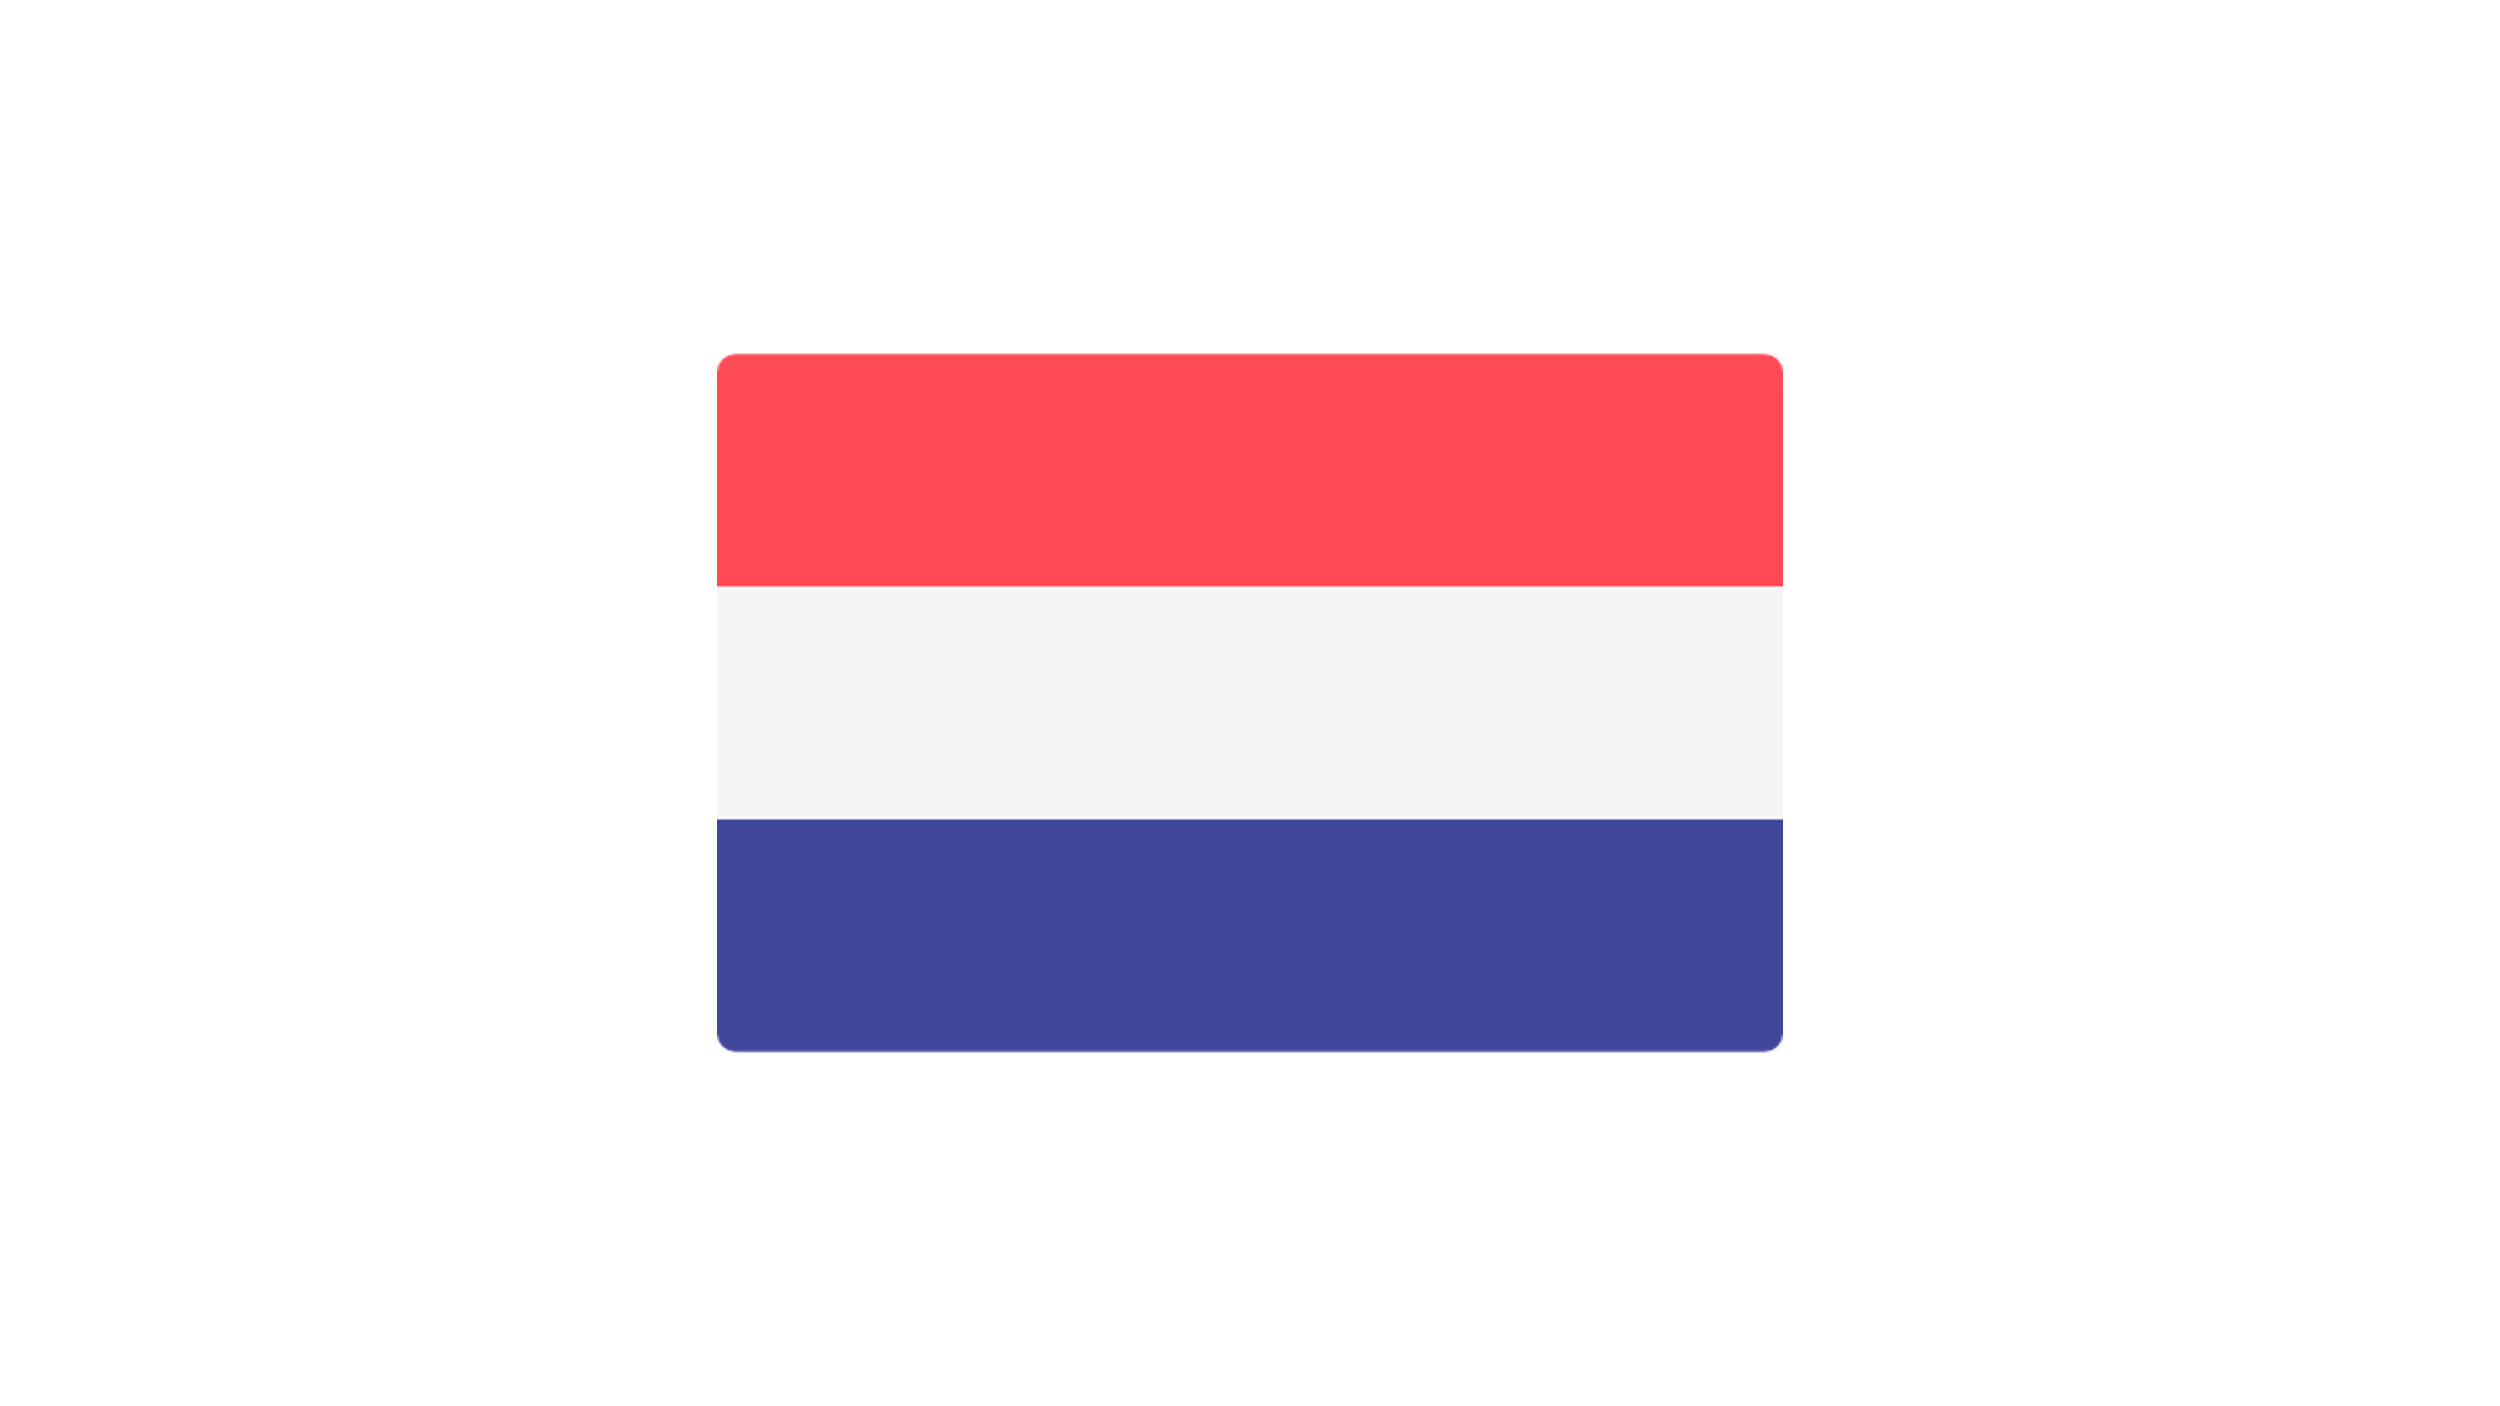 flag-netherlands.png